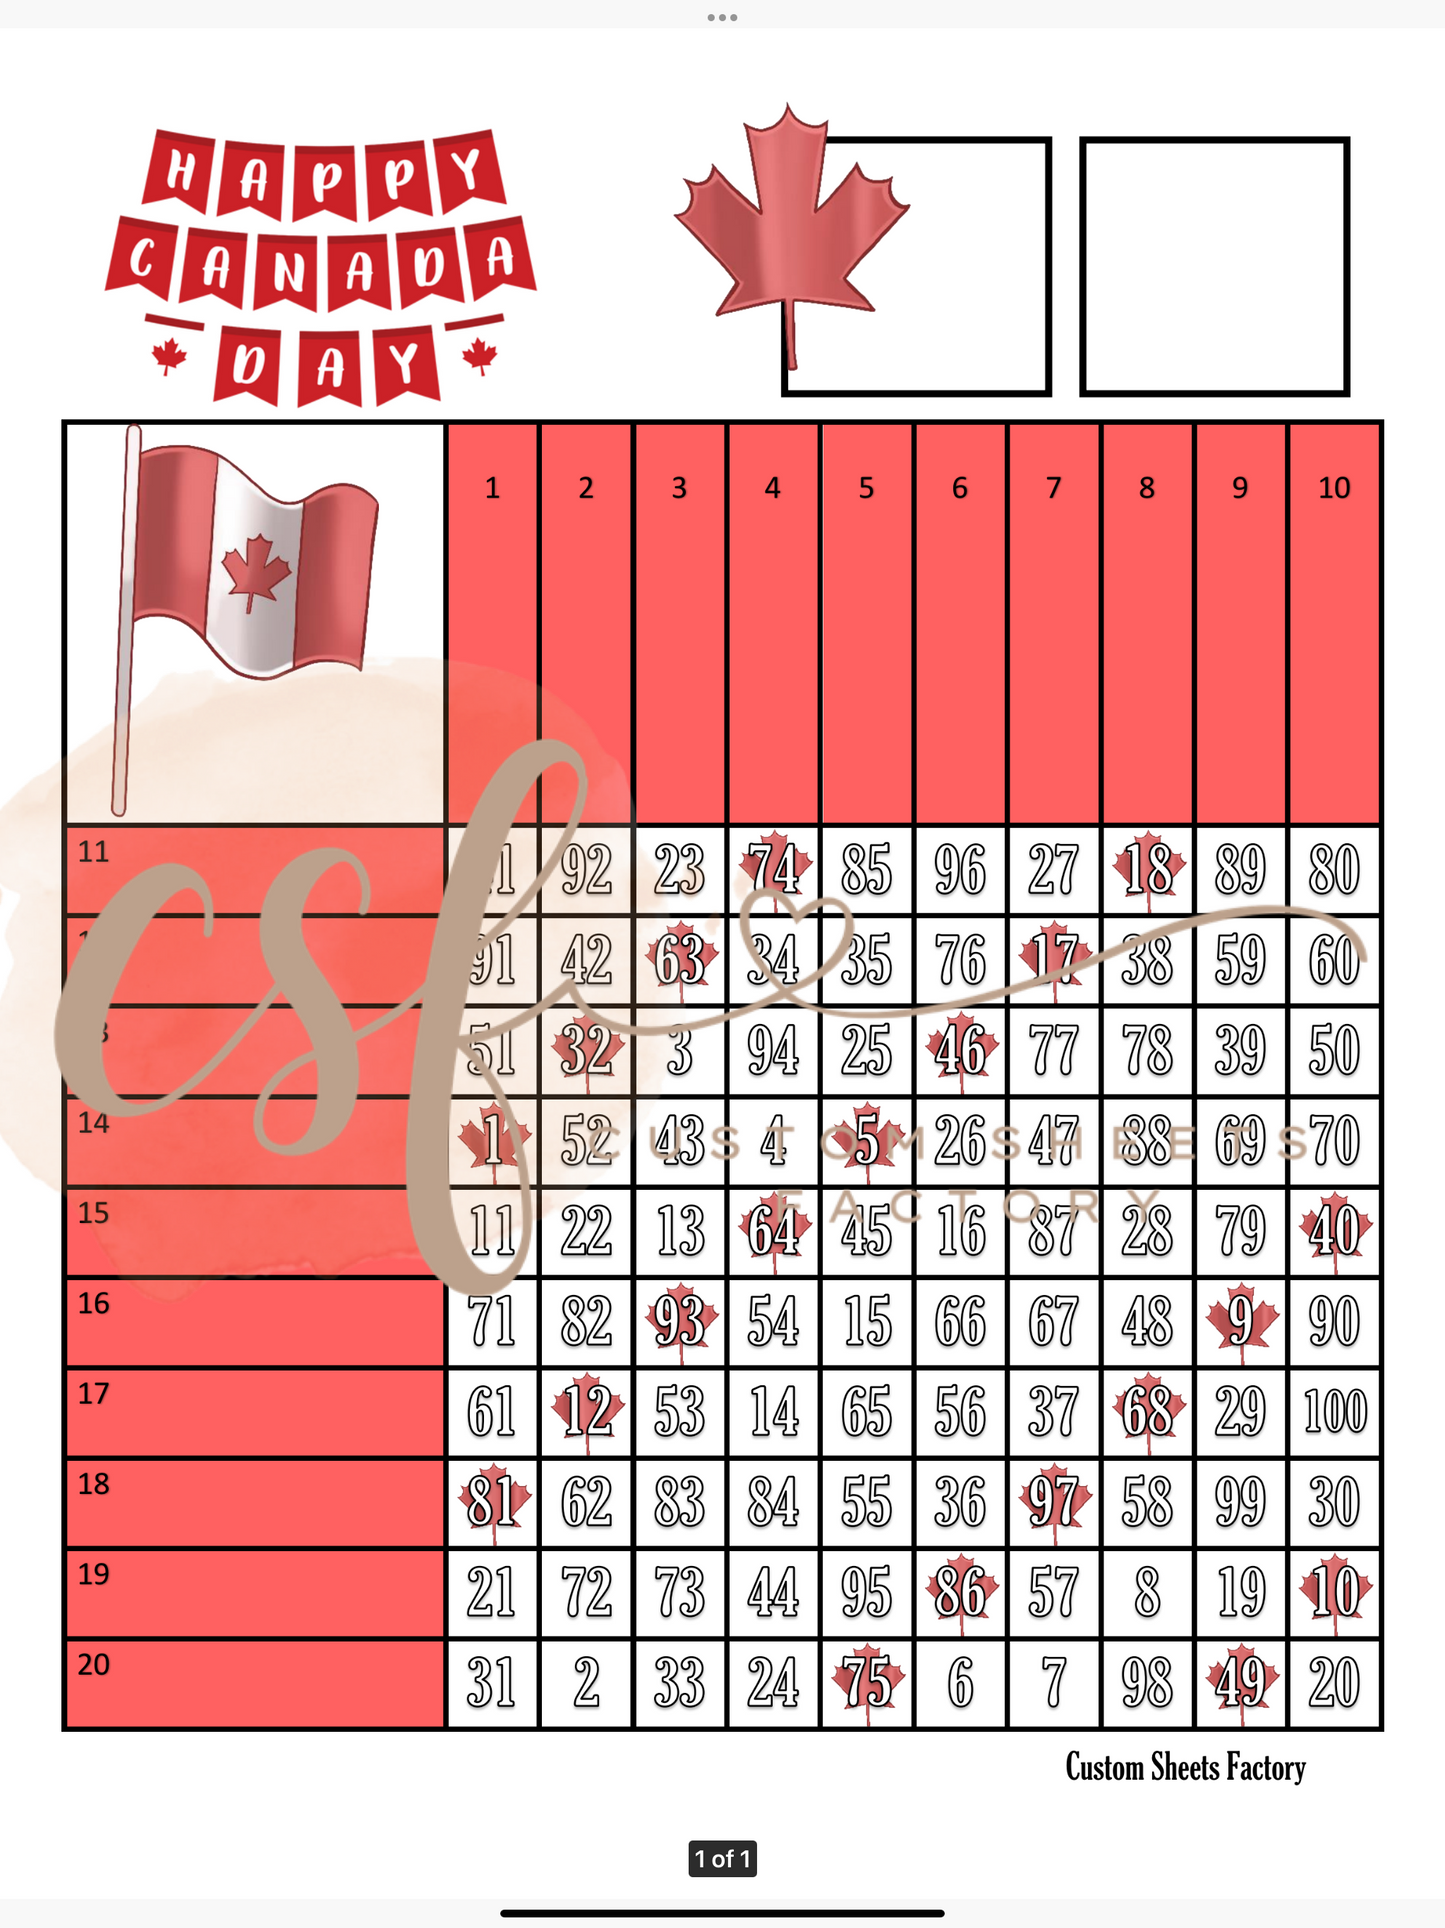 Happy Canada Day - Grid - 100